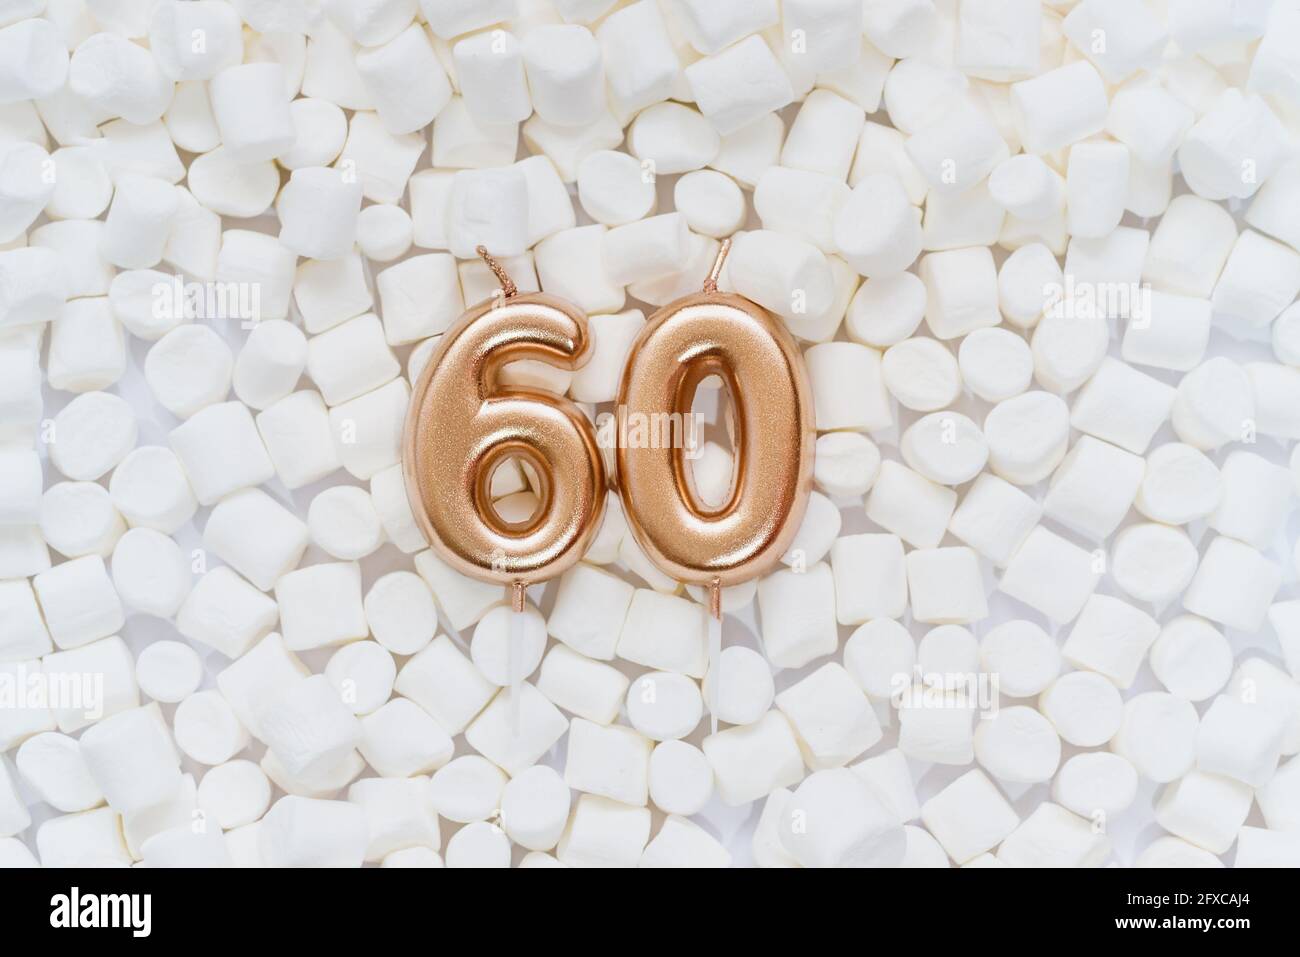 Numéro 60 bougie d'anniversaire dorée sur fond avec guimauves blanches. Anniversaire de soixante ans. Concept de célébration d'anniversaire, anniversaire Banque D'Images